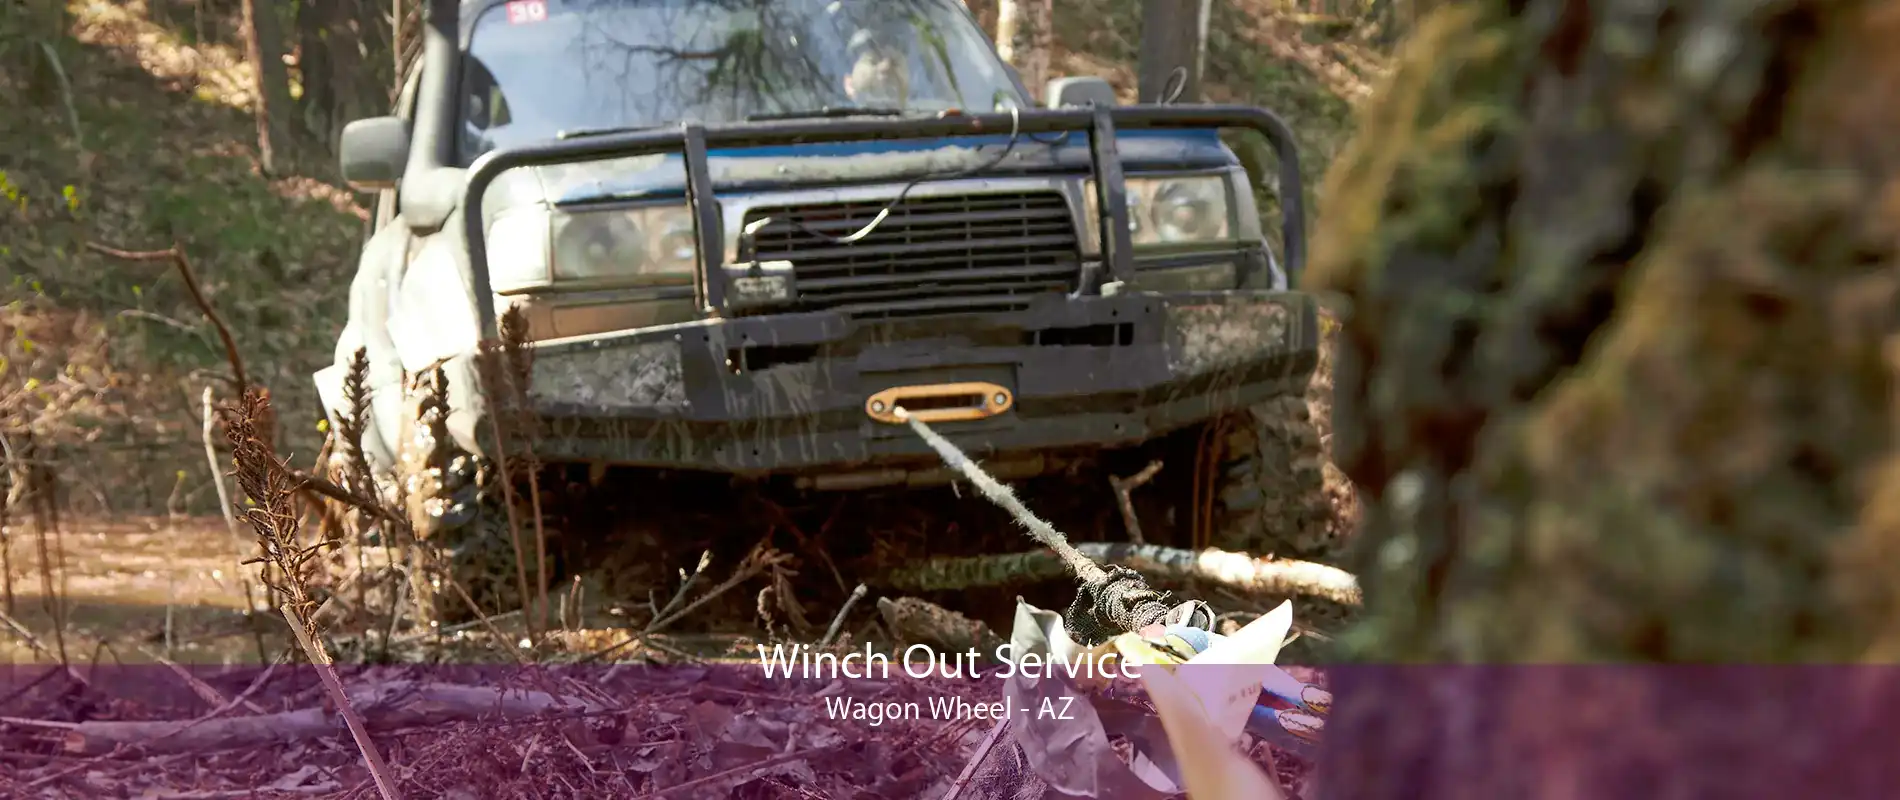 Winch Out Service Wagon Wheel - AZ